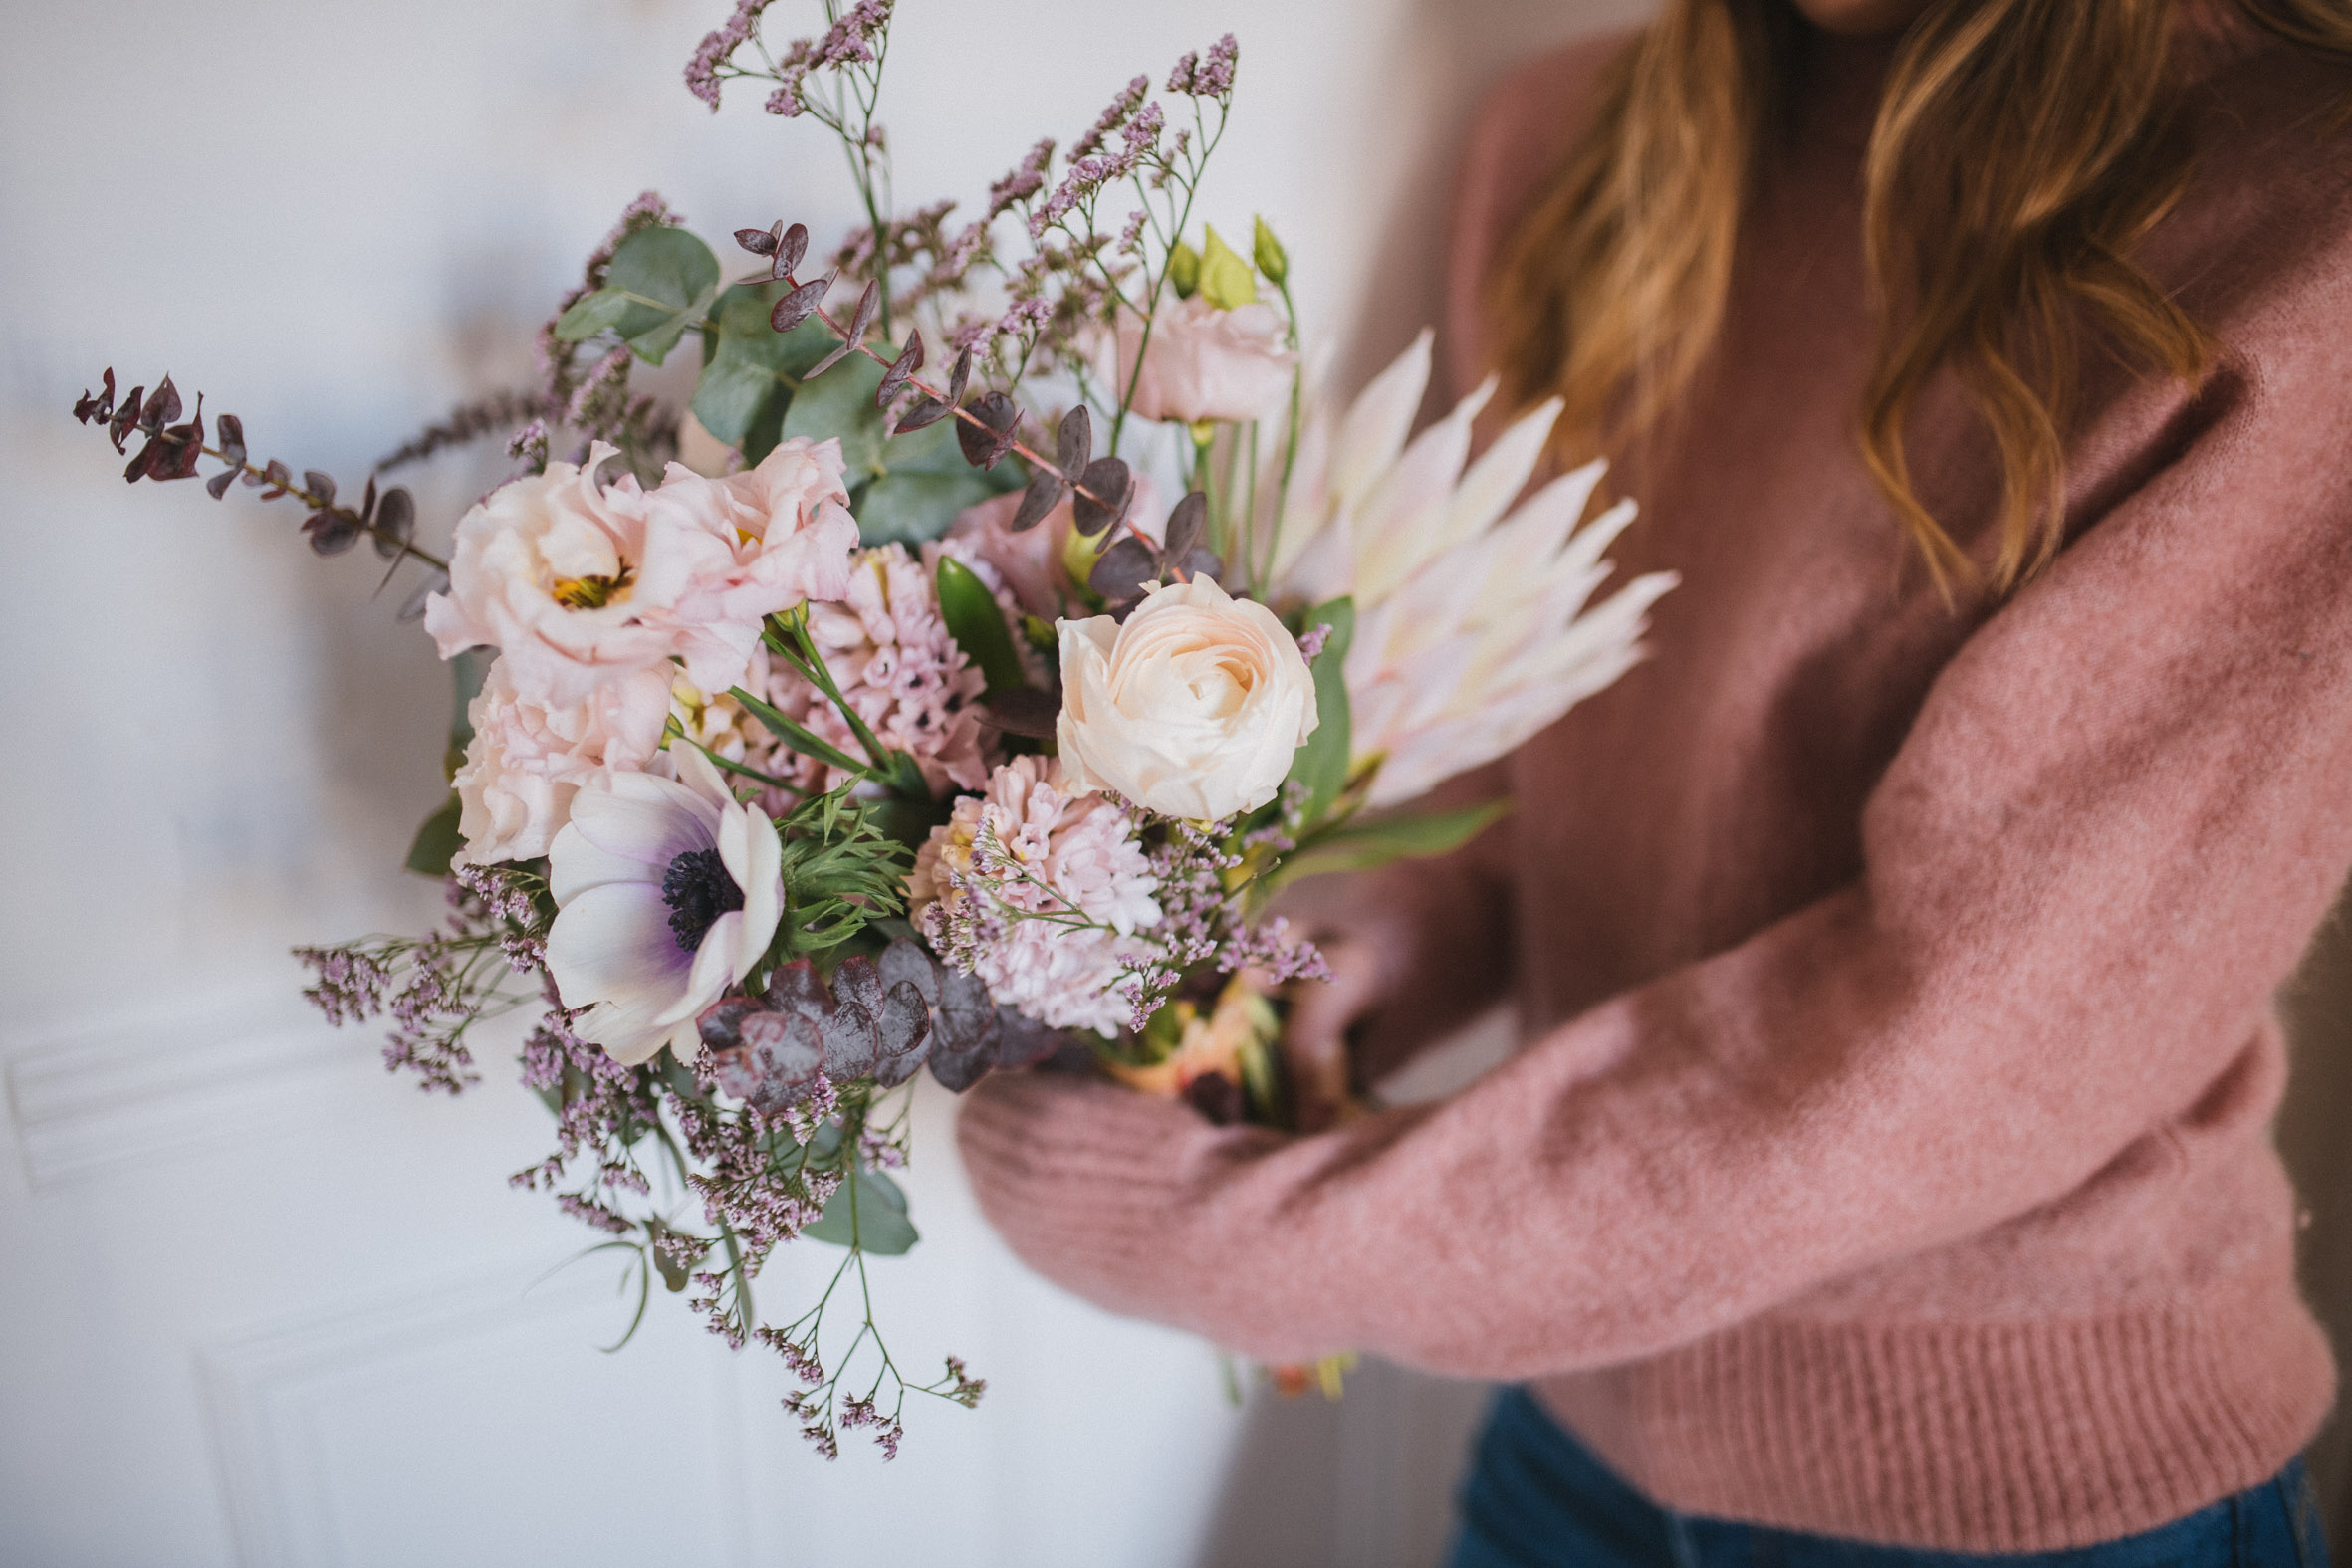 bouquet-saint-valentin-livraison-fleurs-anemone-paris-france-reflets-fleurs -regular-mariage-bouquet-romantique-4 | Reflets fleurs | Scénographe floral